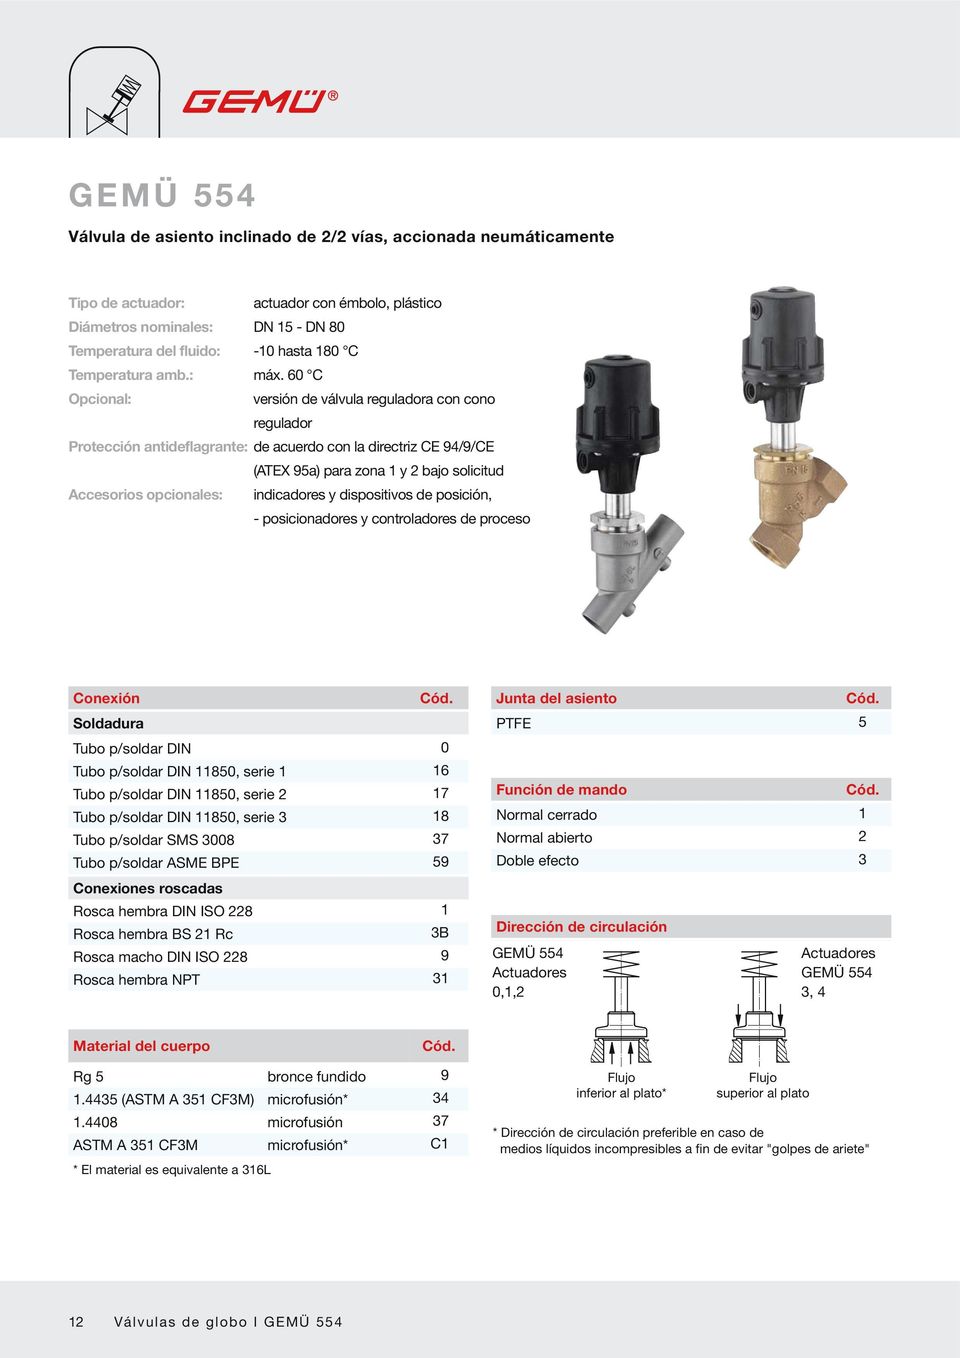 60 C Opcional: versión de válvula reguladora con cono regulador Protección antideflagrante: de acuerdo con la directriz CE 94/9/CE (ATEX 95a) para zona 1 y 2 bajo solicitud Accesorios opcionales: